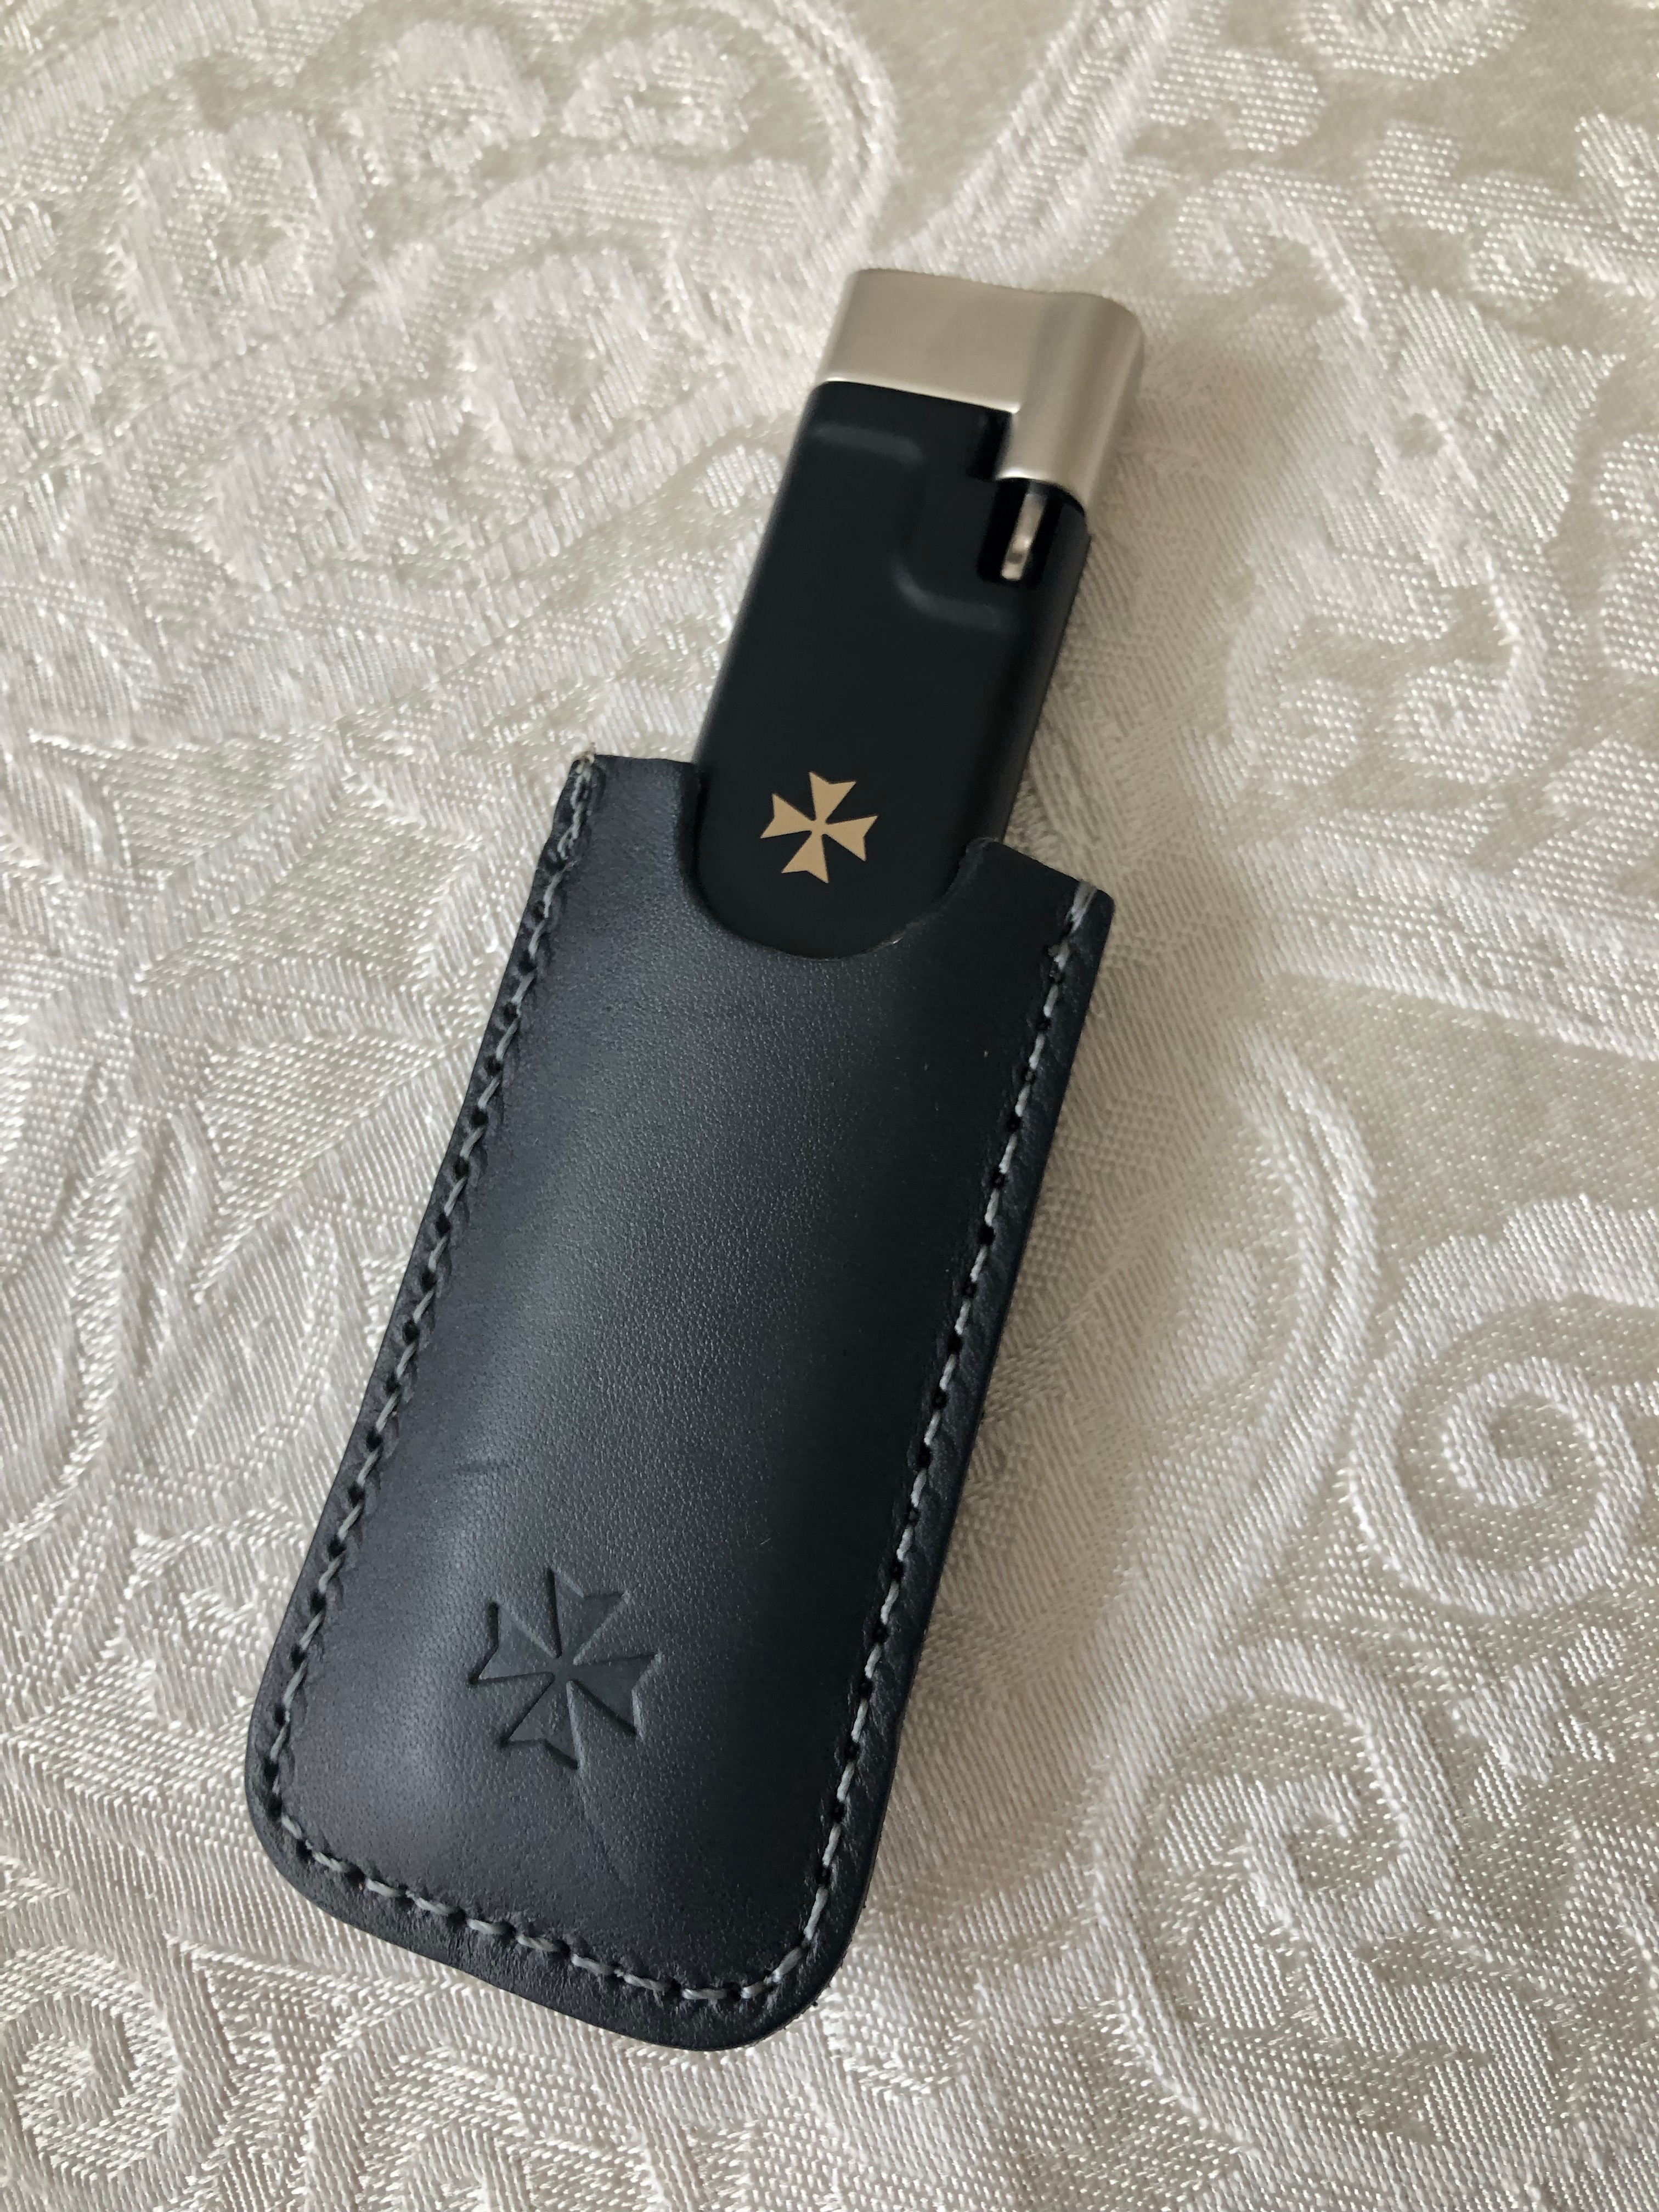 Storage Wars SIHH 2019: Vacheron Constantin 50's-inspired USB stick.